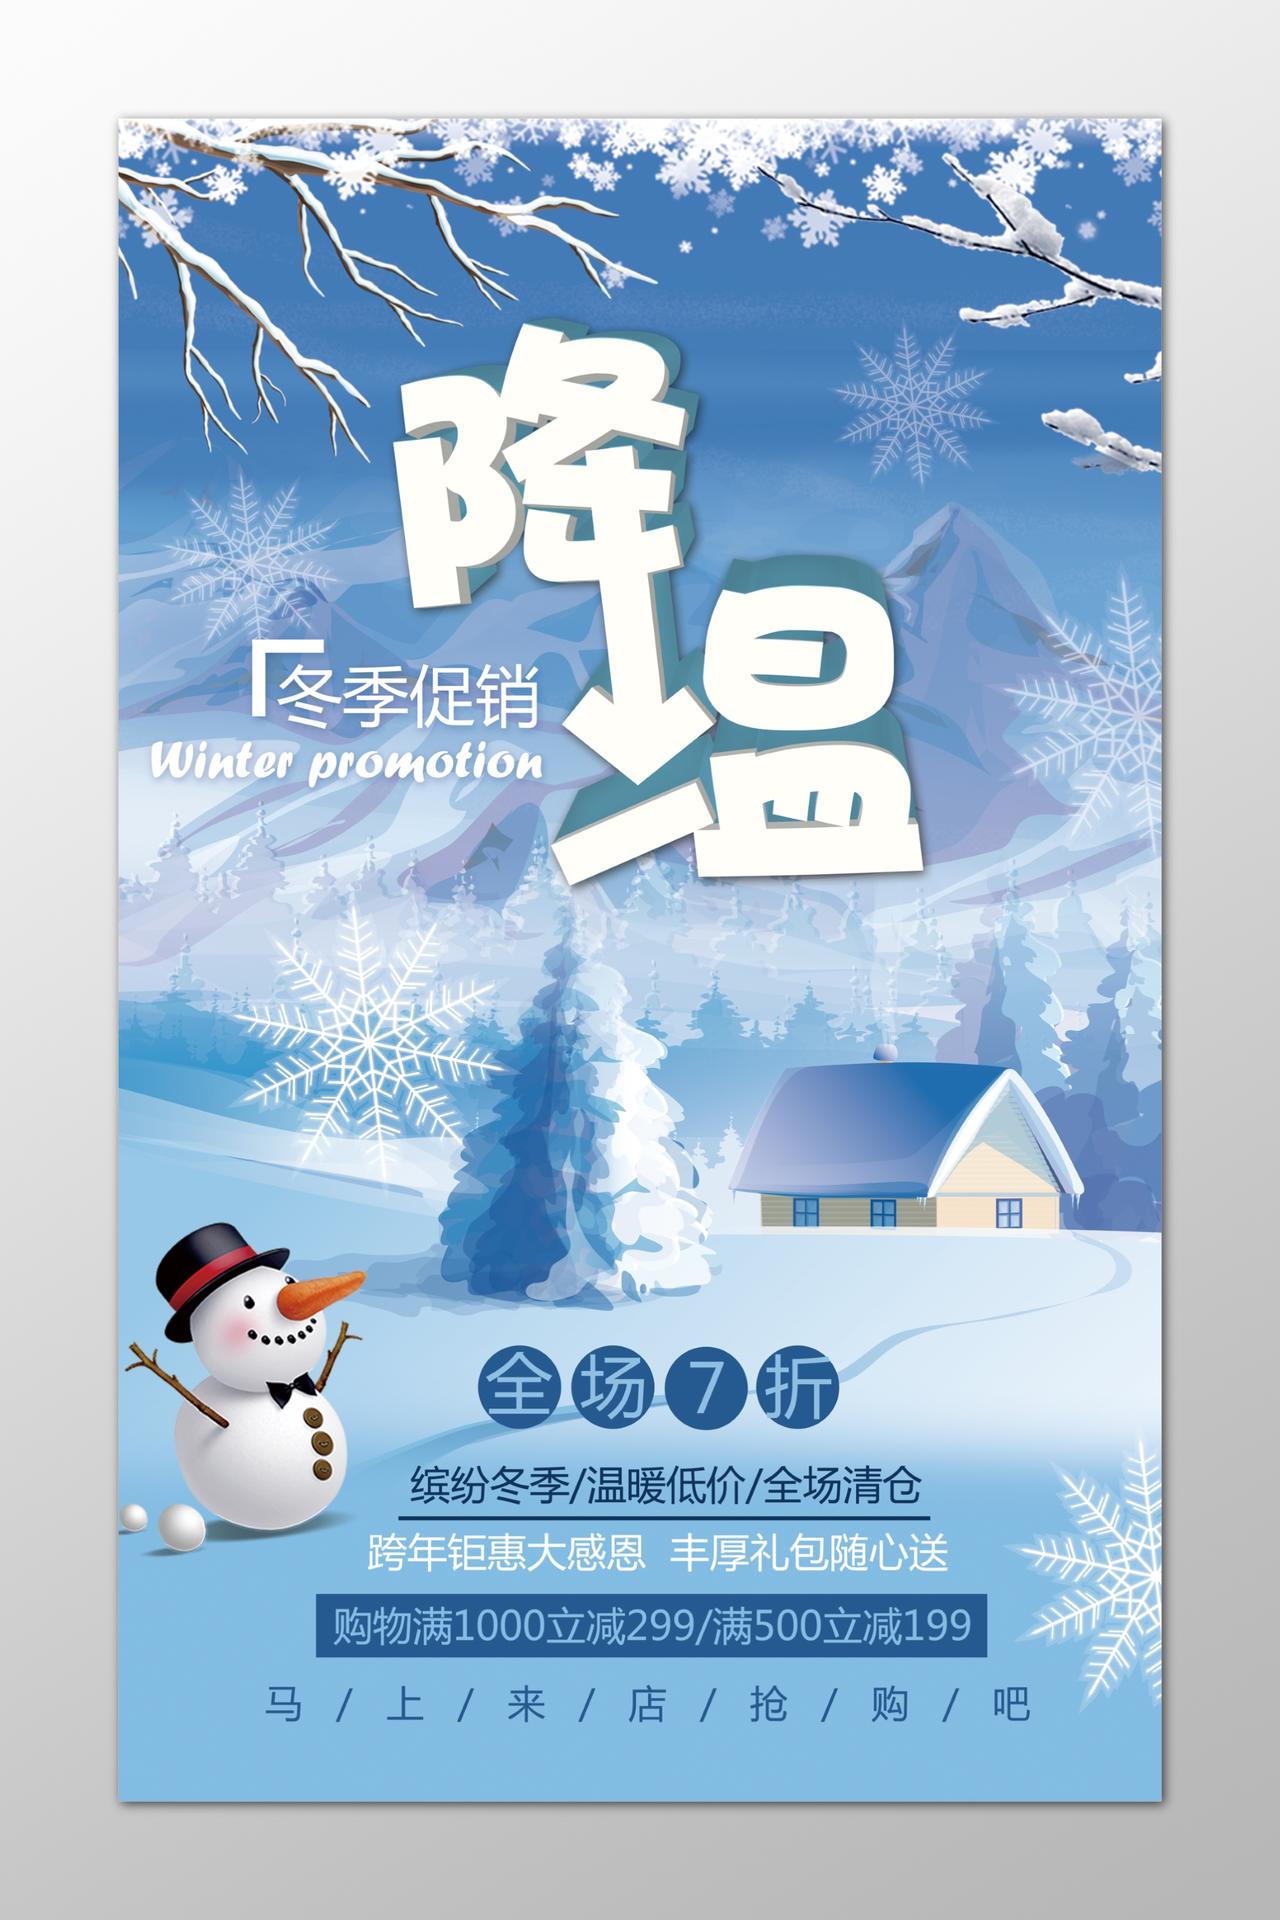 降温冬季促销温暖低价蓝色海报模板